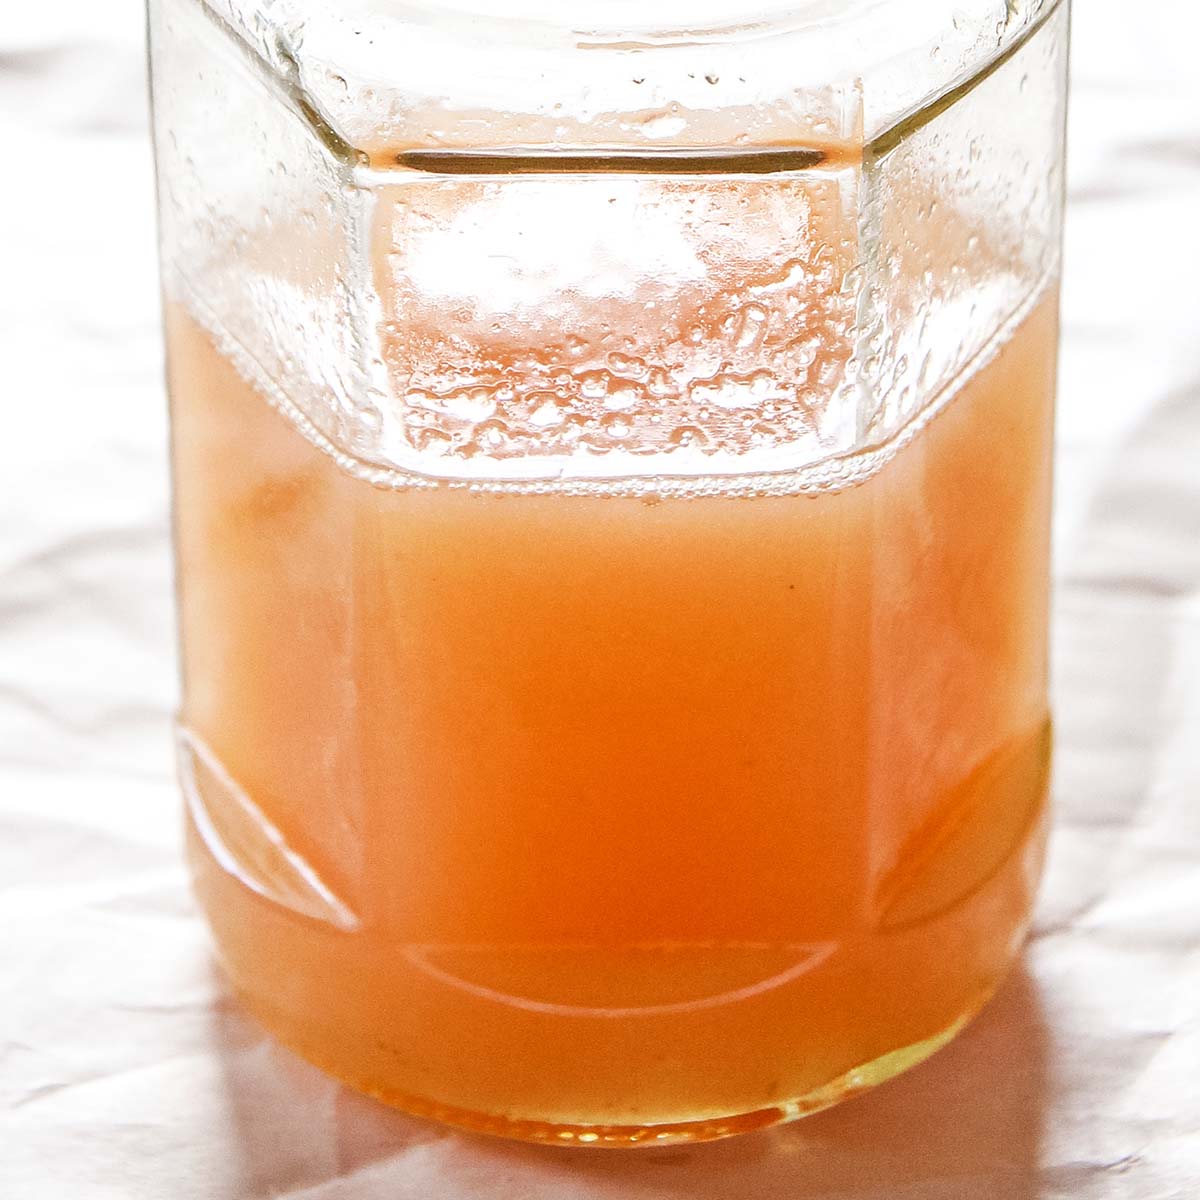 Rhubarb syrup recipe